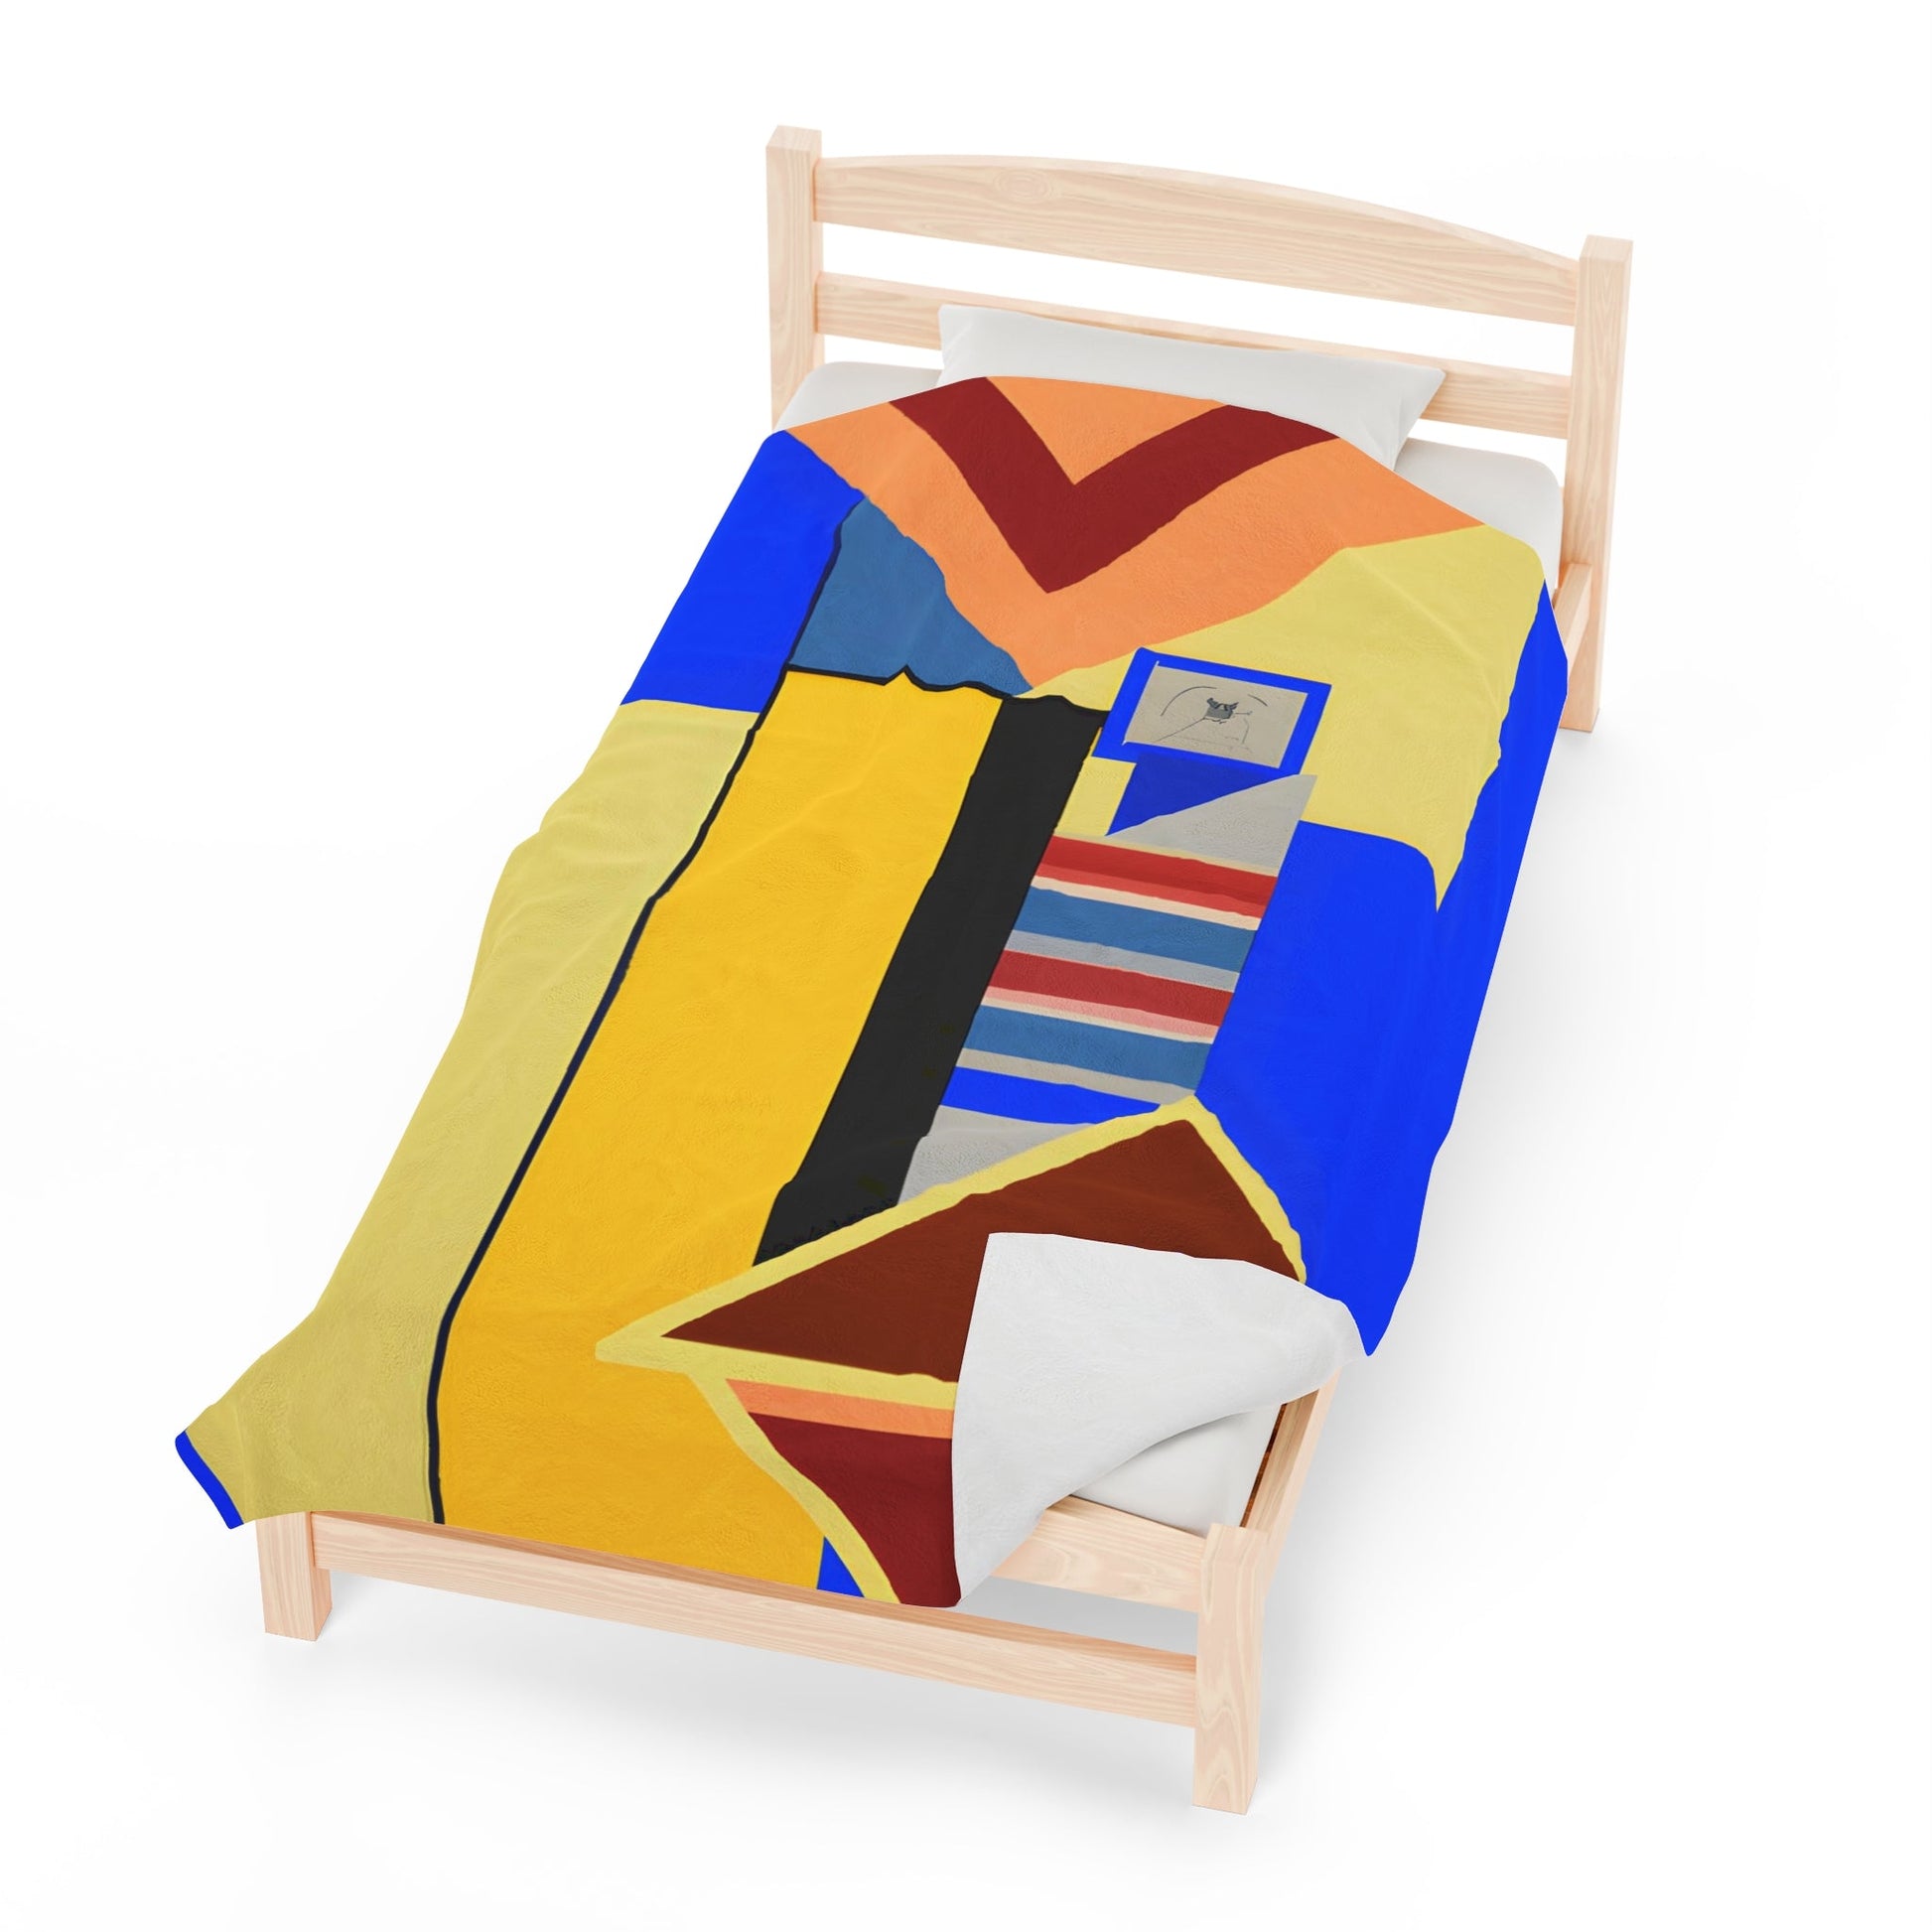 Dream Weaver - Plush Blanket-Plush Blankets-Mr.Zao - Krazy Art Gallery